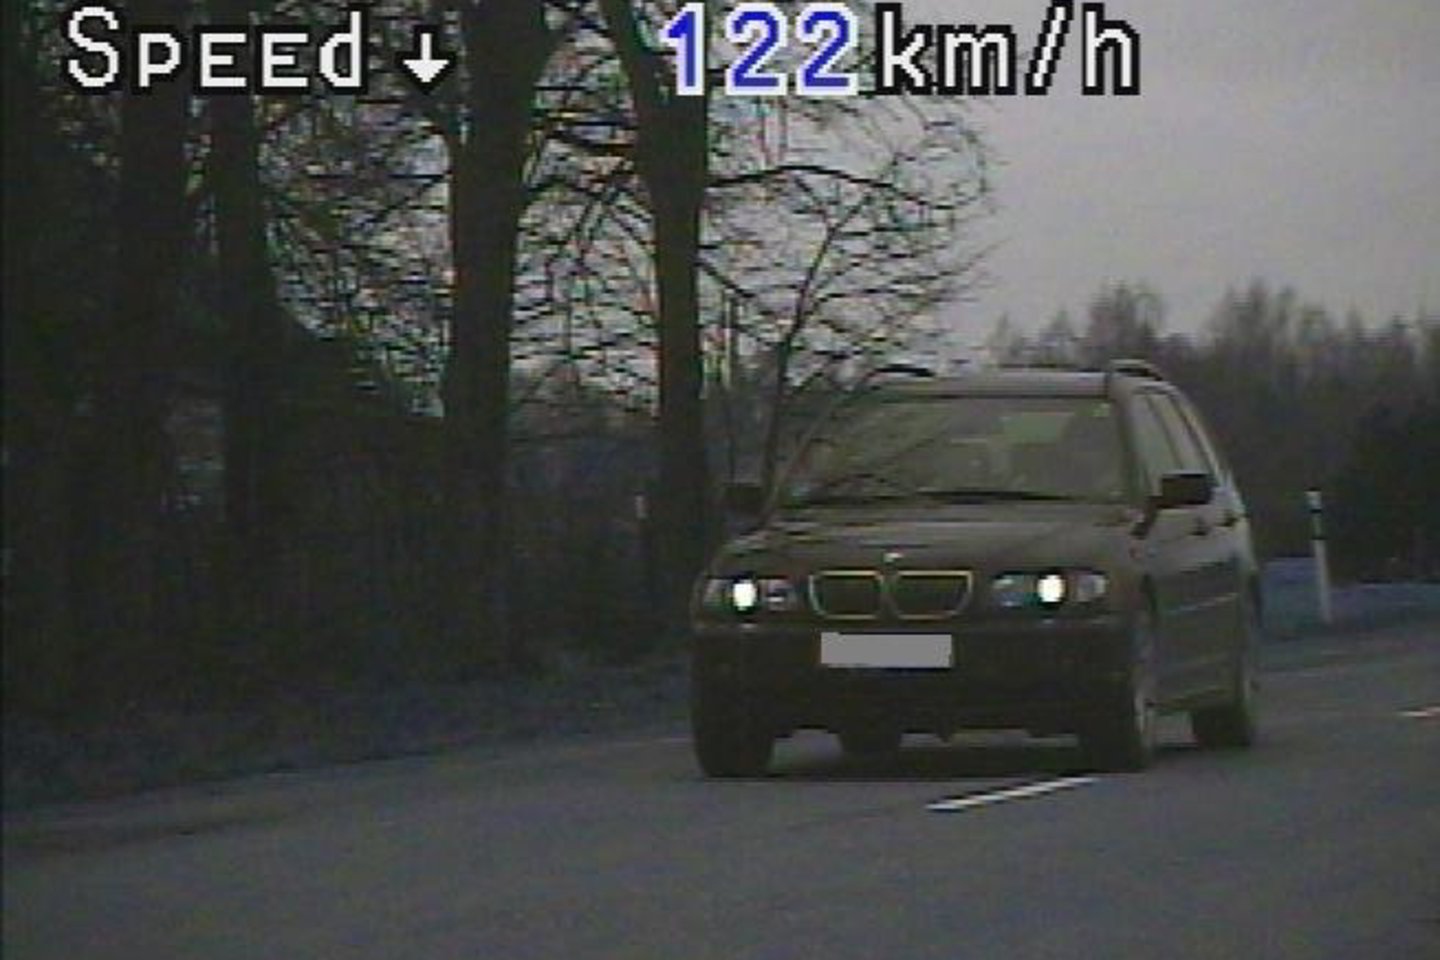 BMW vairuotoja per gyvenvietę važiavo 122 km/val. greičiu.<br>Tauragės apskrities VPK nuotr.